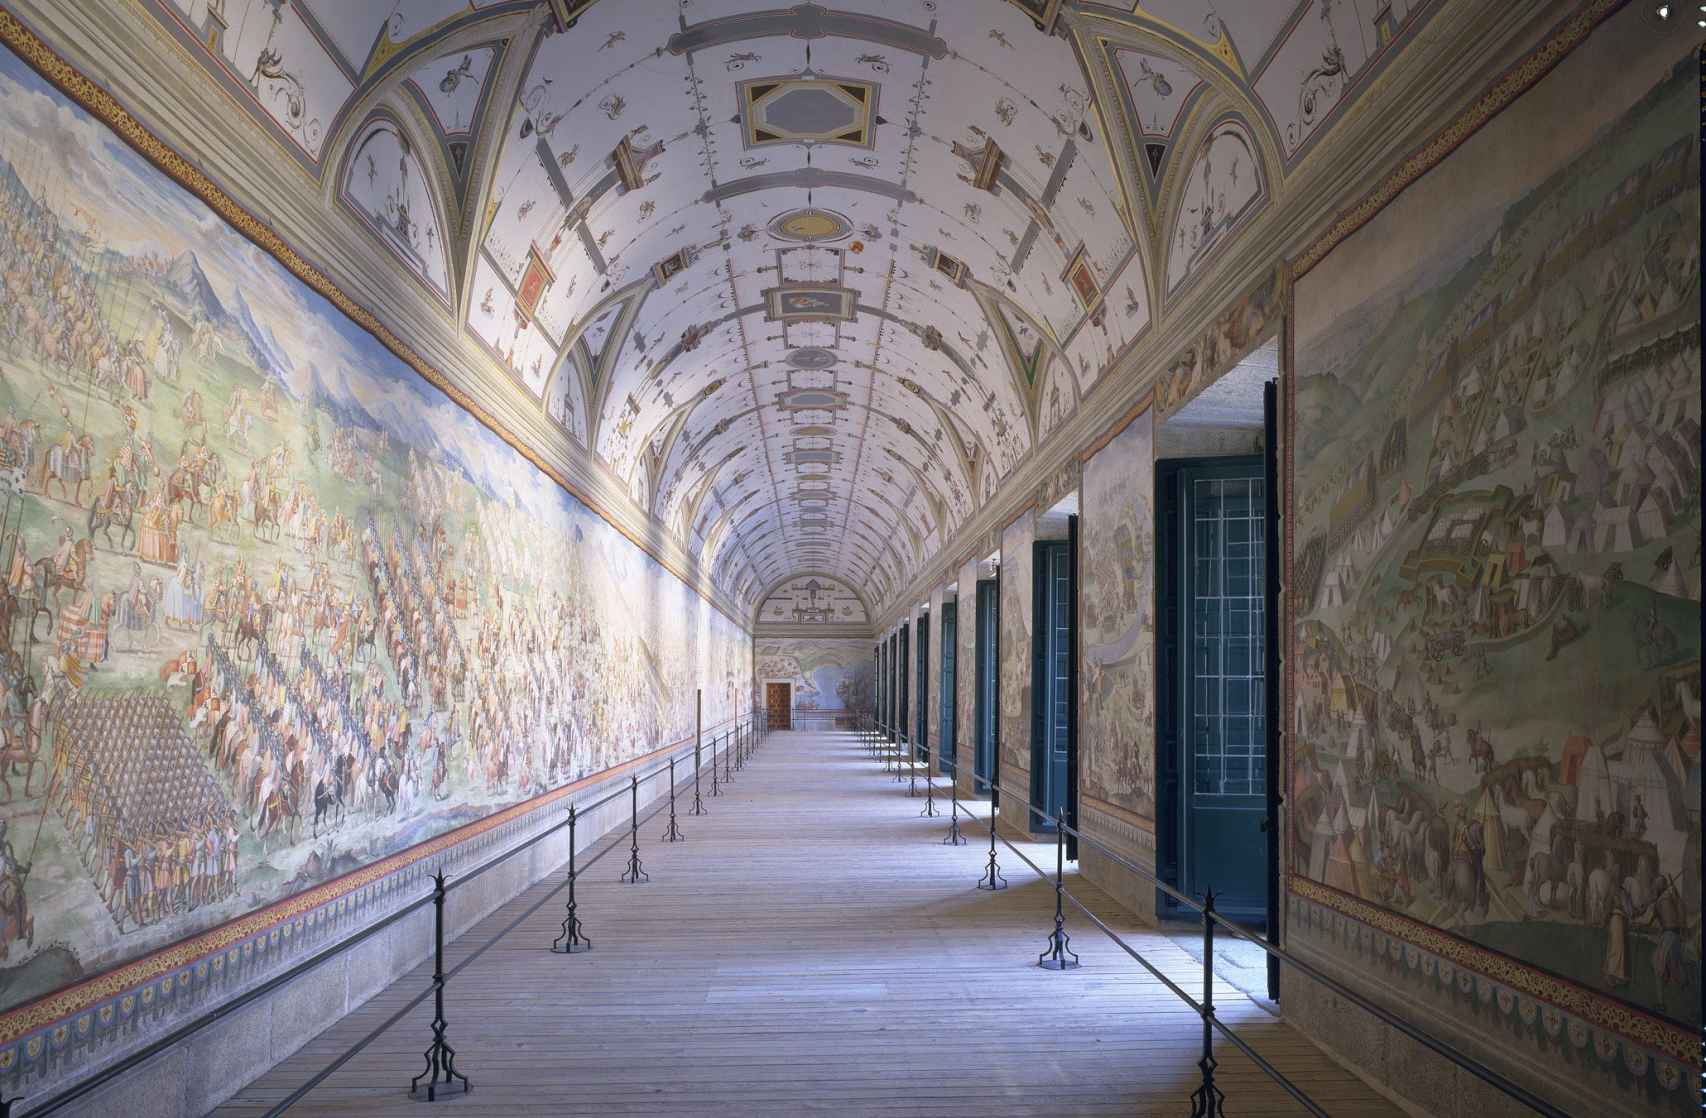 En la Sala de Batallas del monasterio de El Escorial se pintaron, entre 1584 y 1585, varios episodios de la campaña de San Quintín, prueba de la importancia que tuvo para Felipe II.